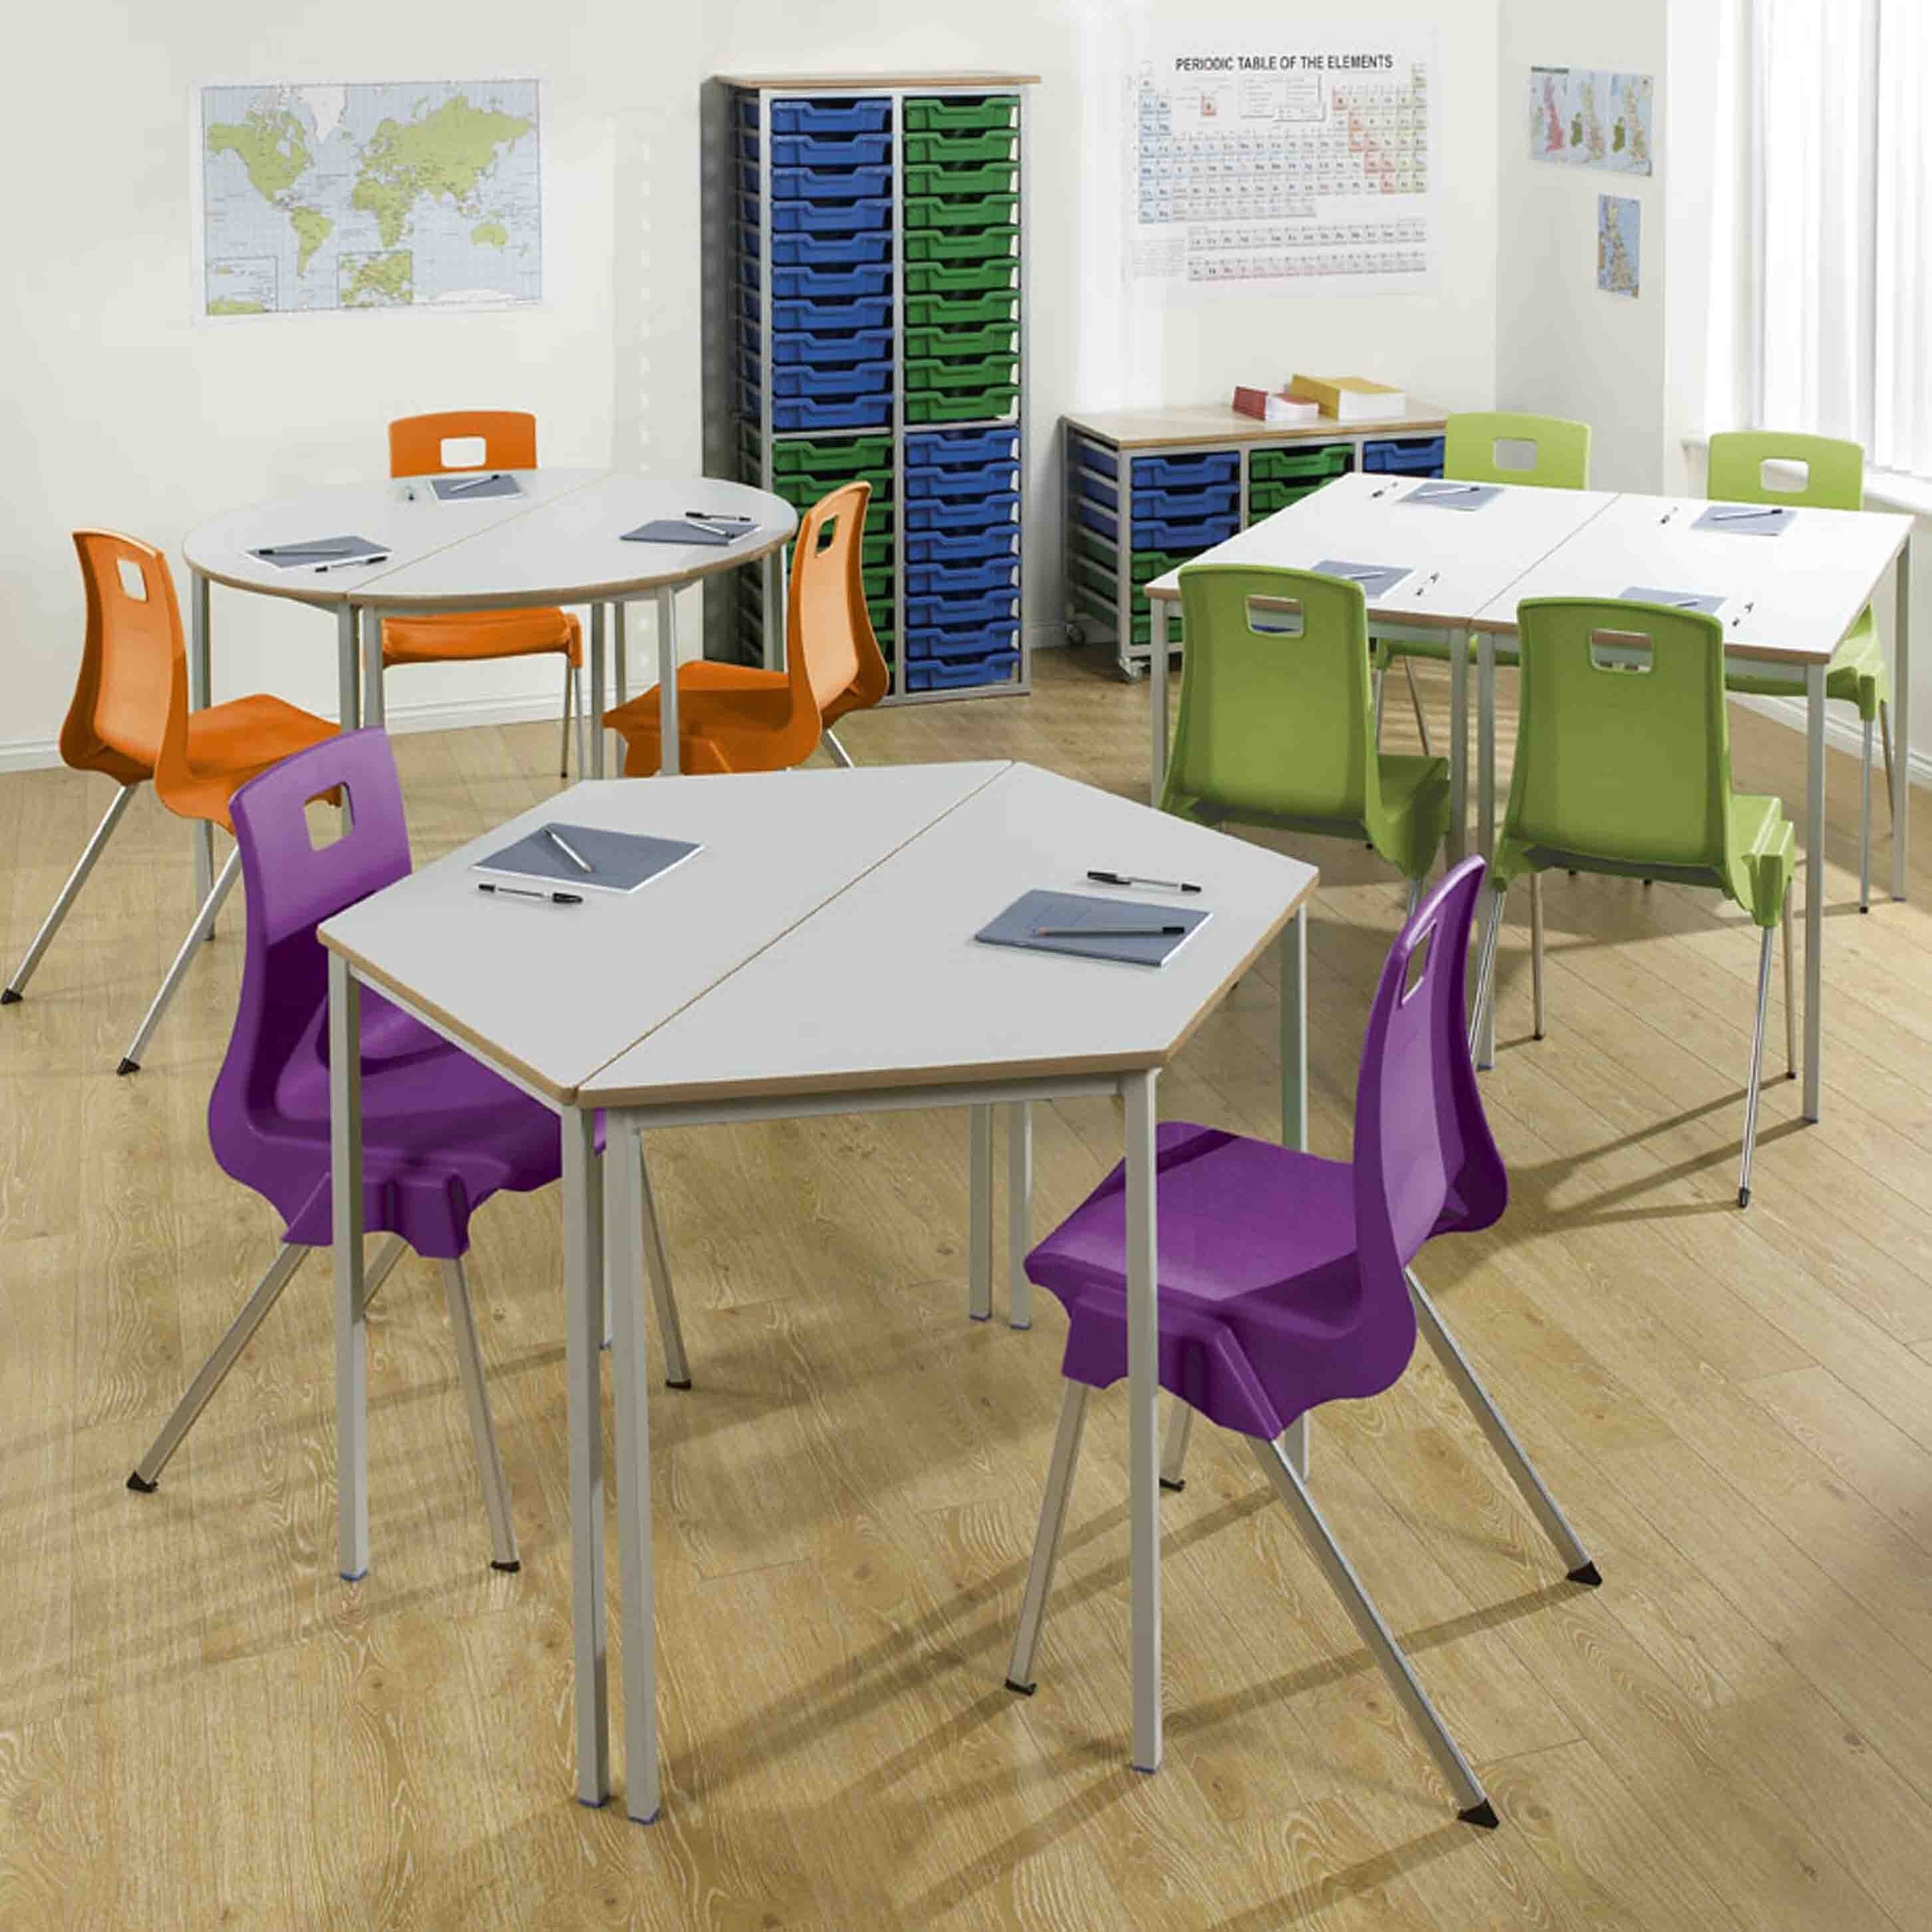 secondary school classroom tables